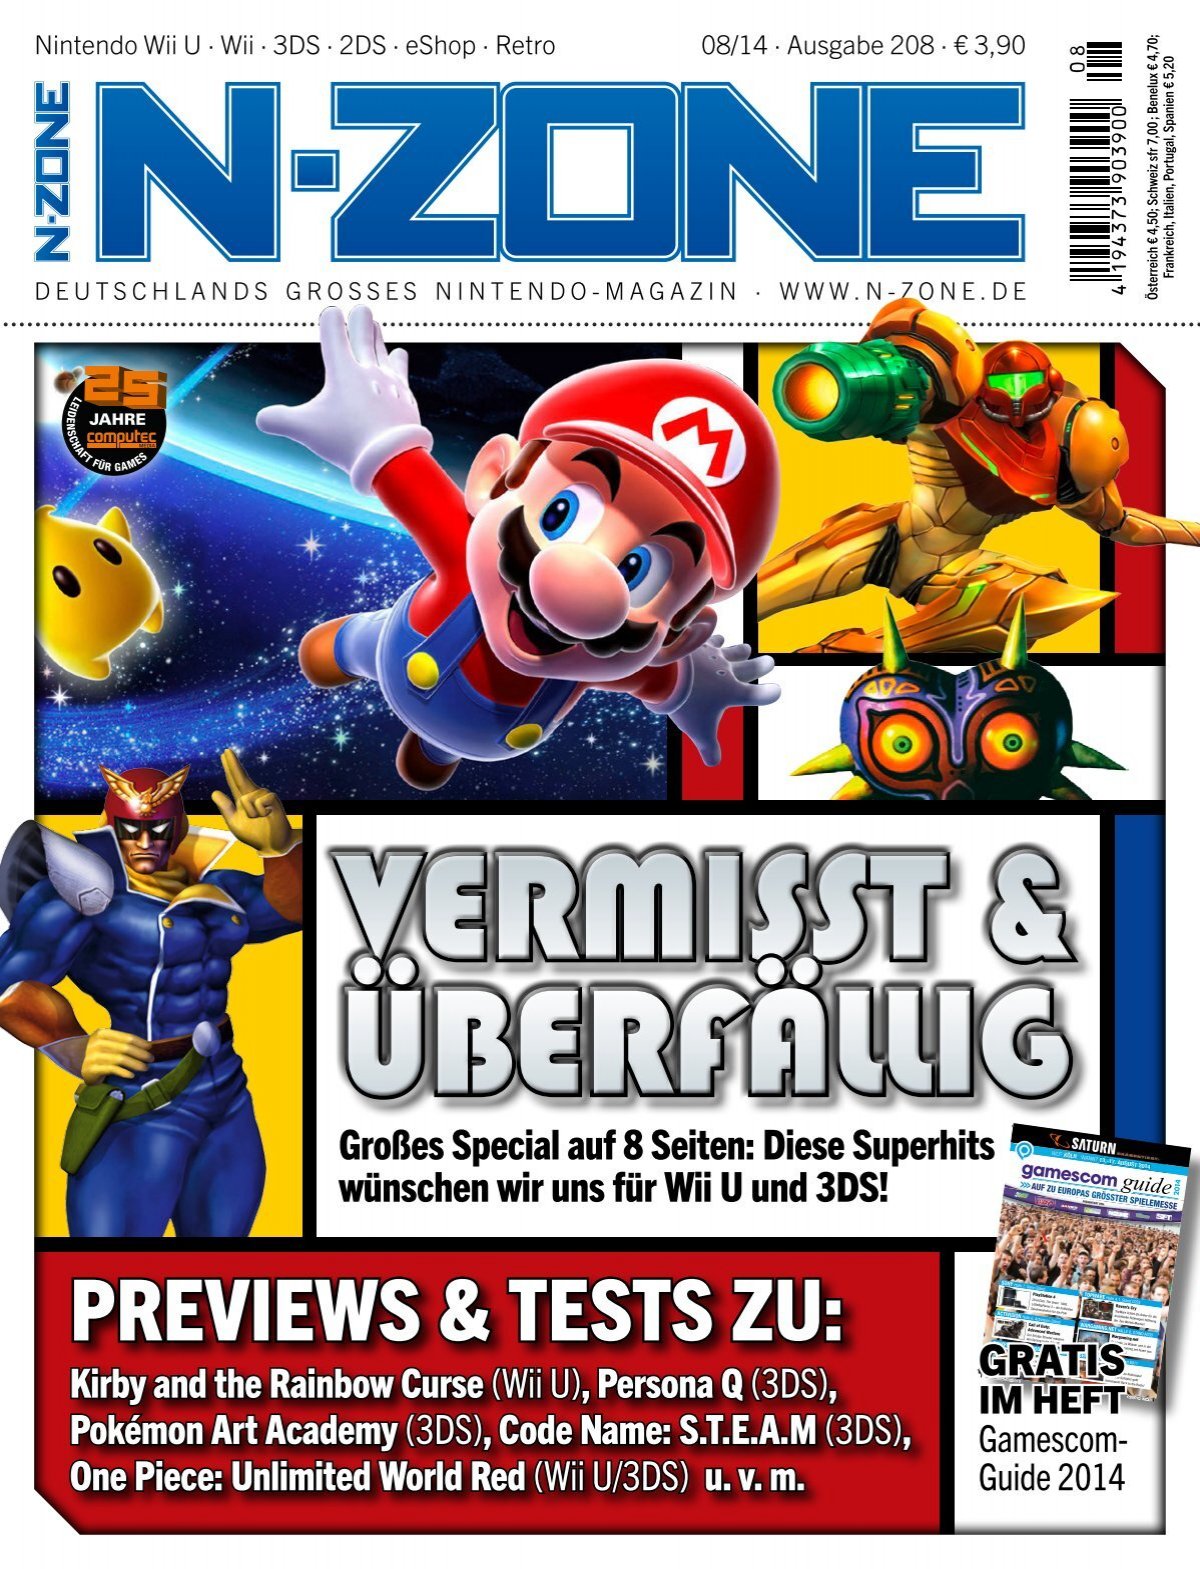 N-ZONE Magazin Vermisst & überfällig (Vorschau)